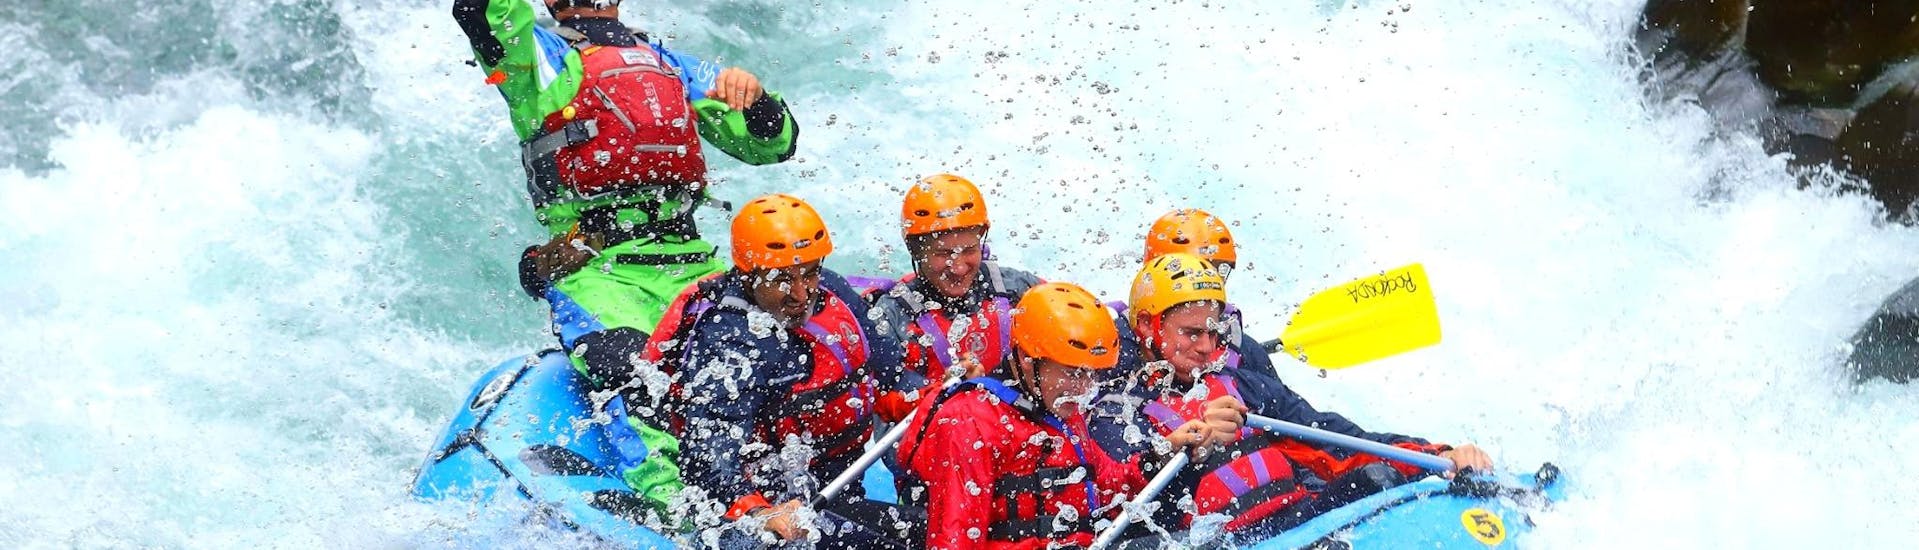 Un grupo de personas en la balsa se enfrenta a las aguas revueltas del río Lima, durante el rafting emocionante en el Lima, organizado por Rockonda.